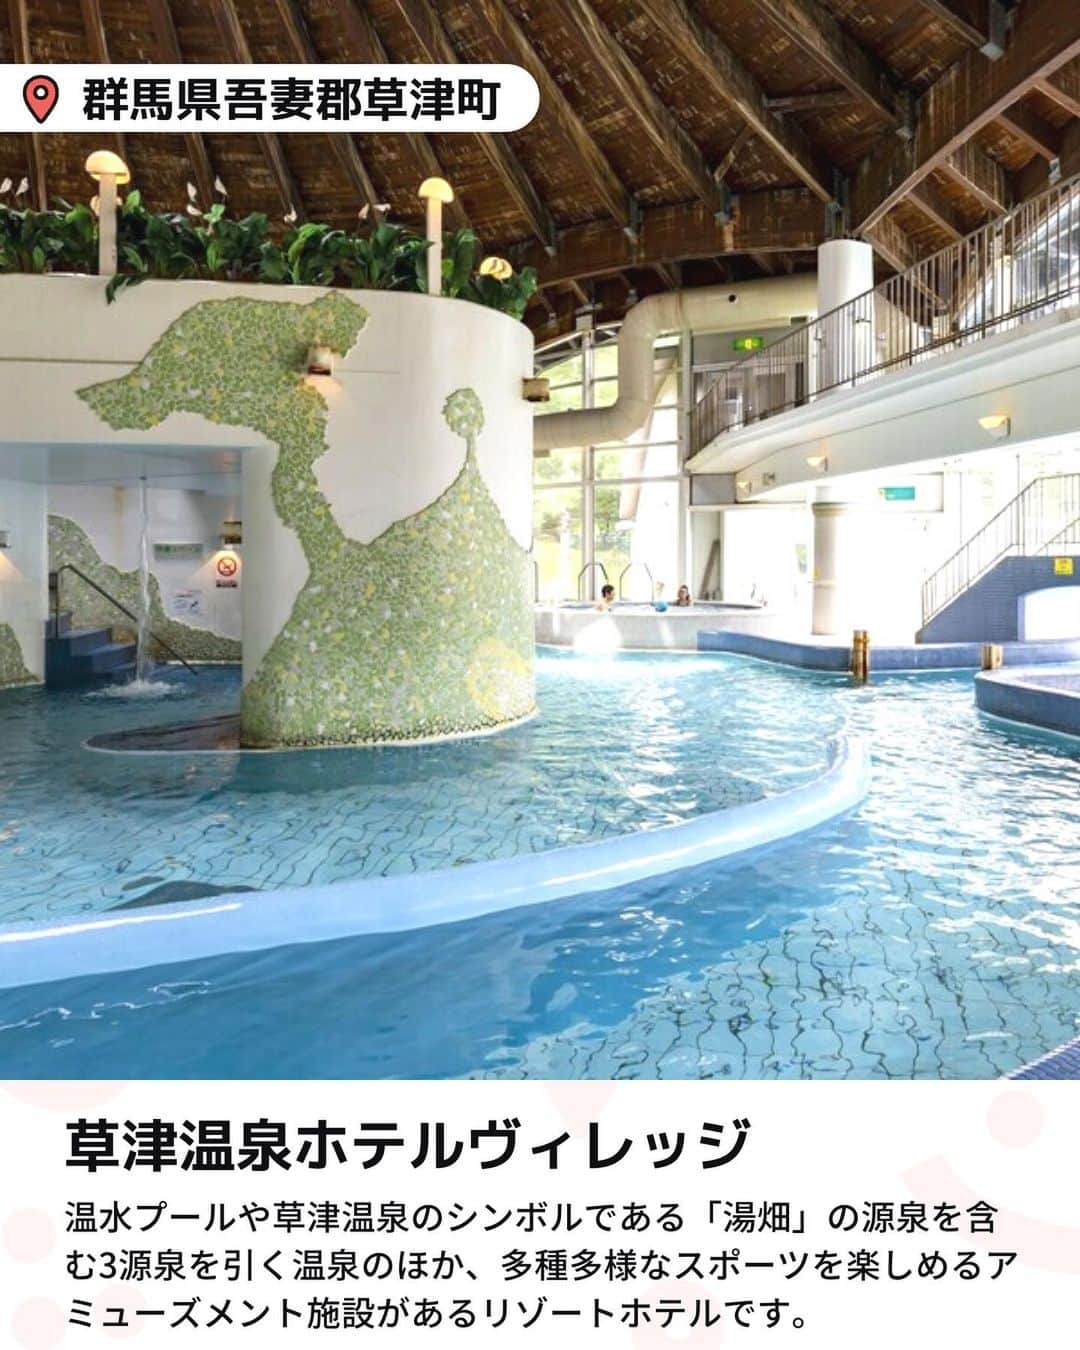 iko-yo（いこーよオフィシャル）さんのインスタグラム写真 - (iko-yo（いこーよオフィシャル）Instagram)「️今回ピックアップしたのは「関東　一年中楽しめる屋内プールプール付きホテル5選」 ーーーーーーーーーーーーーーーーーー 【 #ヒルトン小田原リゾート＆スパ 】 @hiltonodawara  🌈 日本屈指の温泉街である箱根へアクセス抜群 🌈 レジャープールをはじめ、25mプール、サウナ、ジャグジーが完備されています。水遊び用おむつを着用していれば1歳からでも利用可能！　25mスイミングプールでは、レッスンプログラムの開催もあります（一部有料）。  📍住所 神奈川県小田原市根府川583-1  ⏰営業時間 9:00〜21:00（最終受付 20:30）  🎡定休日 なし  🚗アクセス 西湘バイパス「石橋IC」から車で約30分  【 #マホロバマインズ三浦 】 🌈 全室から海を一望できる人気のリゾートホテル🌈 「25m温水プール」には、フローティング遊具「ウォーターアスレチック」（110cm以上利用可）を設置！　思いきり体を動かして遊べますよ♪ ジャグジーなどでリラックスできる温浴施設「クアパーク」には、3歳未満の子供向けの「幼児プール」や流れを楽しむ「水流浴」などがあり、小さな子供から大人まで楽しめます。  📍住所 神奈川県三浦市南下浦町上宮田3231  ⏰営業時間 9:00〜20:00（最終入場19:30）  🎡定休日 なし  🚗アクセス 横浜・横須賀道路「佐原IC」から車で15分  【 #龍宮城スパホテル三日月 】 🌈おすすめポイント 🌈 関東最大級のスパリゾート！全天候型アトラクションプール「アクアパーク」は、室内とは思えないほど設備が充実！　スリル満点の「70mウォータースライダー」をはじめ、ぷかぷか浮きながら遊べる「流れるプール」、ダイナミックに泳げる「25mプール」など思いっきり楽しめますよ♪  📍住所 千葉県木更津市北浜町1  ⏰営業時間 10:00〜22:00  🎡定休日 なし  🚗アクセス アクアライン「木更津金田IC」から車で約５分  【 #草津温泉ホテルヴィレッジ 】 @kusatsu_hotel_village  🌈 多種多様なスポーツを楽しめるアミューズメント施設があるリゾートホテルです 🌈 プール＆温泉施設「テルメテルメ」のプールゾーンには、しっかり泳ぎたい人向けの水泳エリア、ジャグジーや水深30cmの幼児用プールを完備。温泉・サウナゾーンには、足浴やミストサウナ、打たせ湯、寝湯などがあり、体を休めながら遊べますよ♪  📍住所 群馬県吾妻郡草津町大字草津618  ⏰営業時間 平日11:00〜20:00（最終受付19:30）、土日および祝日10:00〜20:00（最終受付19:30）、夏季期間9:30〜20:00（最終入場19:30）  🎡定休日  不定休  🚗アクセス 関越自動車道「渋川伊香保IC」から車で約90分  【 #ホテルエピナール那須 】 🌈 手ぶらでも楽しめる室内温水プール！ 🌈 全天候型の室内温水プールには、25mの水泳コースと2種類の子供用プール（30cmおよび60cm）があります。宿泊者は無料で利用でき、水着のレンタル（有料）もあるので手ぶらでも楽しめますよ♪  📍住所 栃木県那須郡那須町大字高久丙1  ⏰営業時間 10:00〜20:00  🎡定休日 なし  🚗アクセス 東北自動車道「那須IC」から車で約10分  ※2023年11月16日時点の情報です。最新の情報は公式HPをご確認下さい。　 ーーーーーーーーーーーーーーーーーーー おでかけ情報量は日本最大級！ 子どもとお出かけ情報サイト「いこーよ」 「親子でおでかけしたい場所」をご紹介させていただいています！ お子さんとのおでかけの思い出の写真を、このアカウントをフォローの上#いこーよ #いこーよおでかけ部 をつけてぜひ投稿してください。魅力的な写真は、いこーよ公式SNSで紹介させていただきます！ 募集中タグ#いこーよ #いこーよおでかけ部 「子どもと行きたい！」と思ったら保存が便利！ プロフィールのURLから「いこーよ」のサイトに行くと、他の投稿やオトクな情報などが載っています♪ ☞ @ikoyo_odekake #いこーよ #お出かけ #おでかけ #お出かけスポット #子連れ #子連れ旅行#こどものいる暮らし #子連れスポット  #子どもとおでかけ #木更津ママ #木更津旅行 #木更津観光 #小田原ママ #小田原旅行 #小田原観光」11月30日 19時04分 - ikoyo_odekake